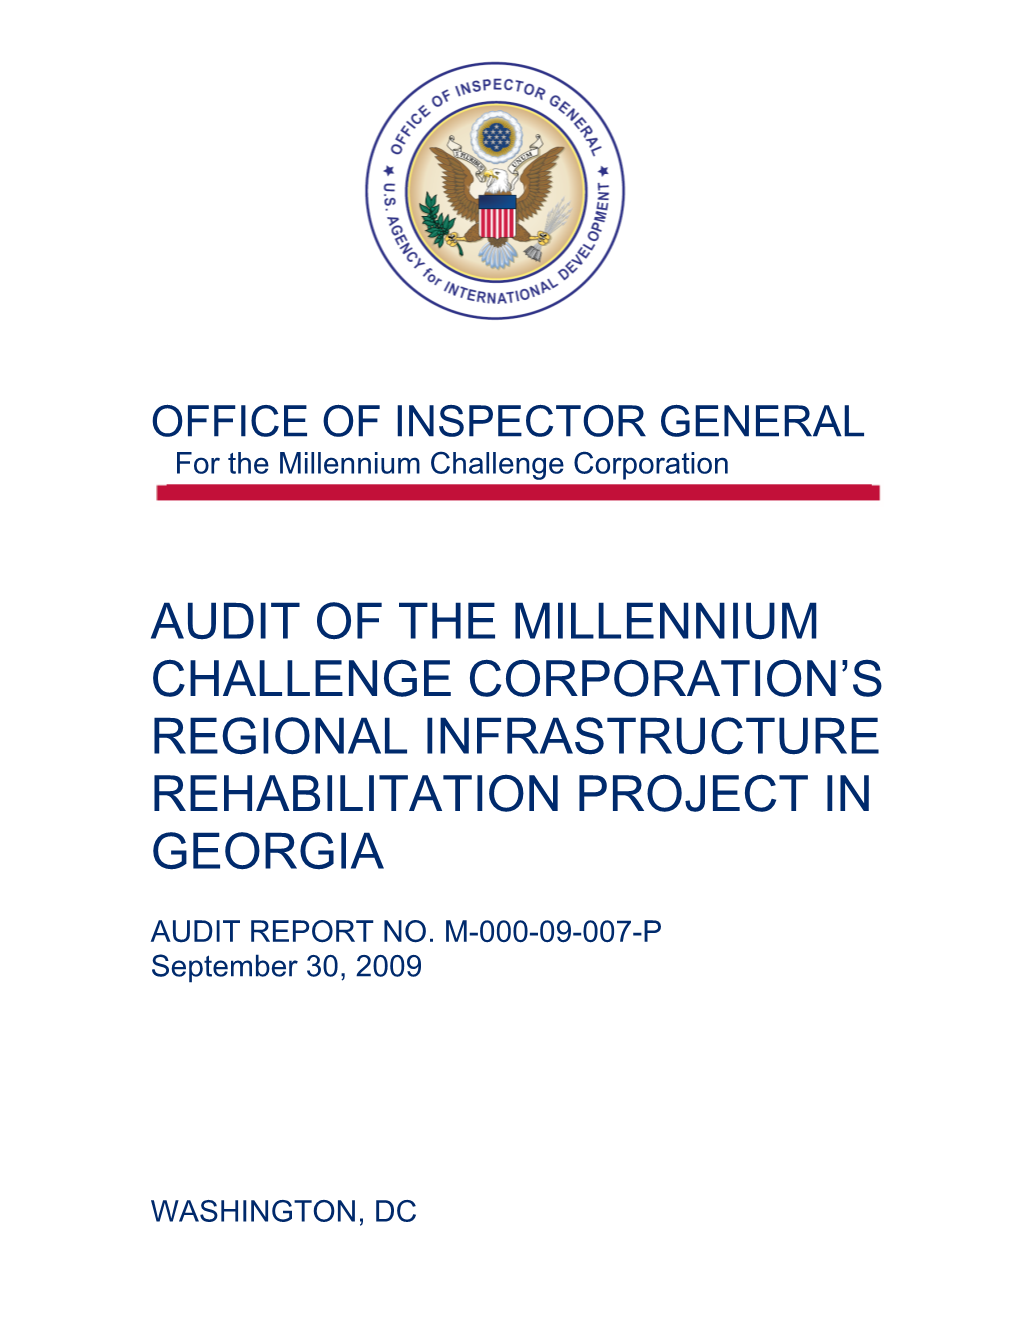 Audit of the Millennium Challenge Corporation's